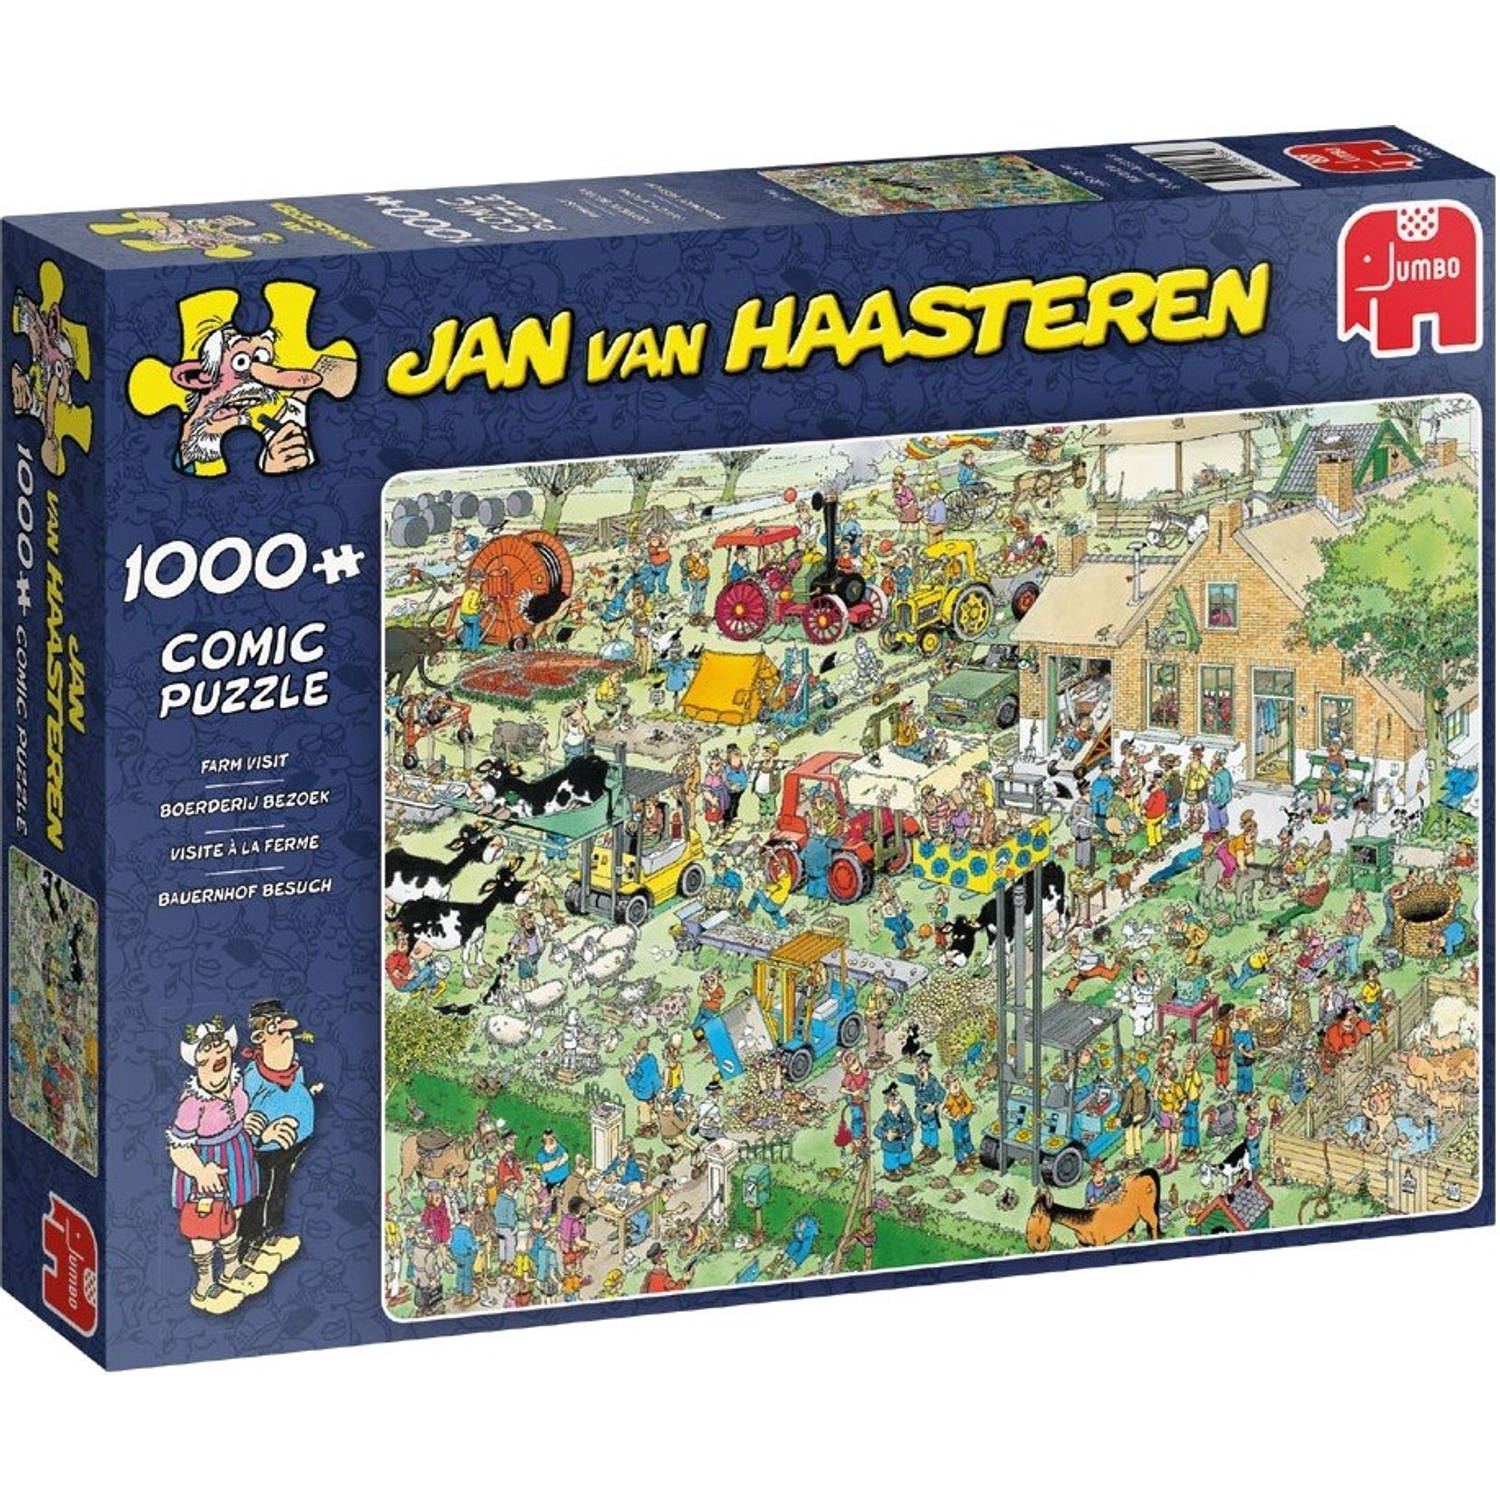 Jan van Haasteren boerderij bezoek - 1000 stukjes | Blokker